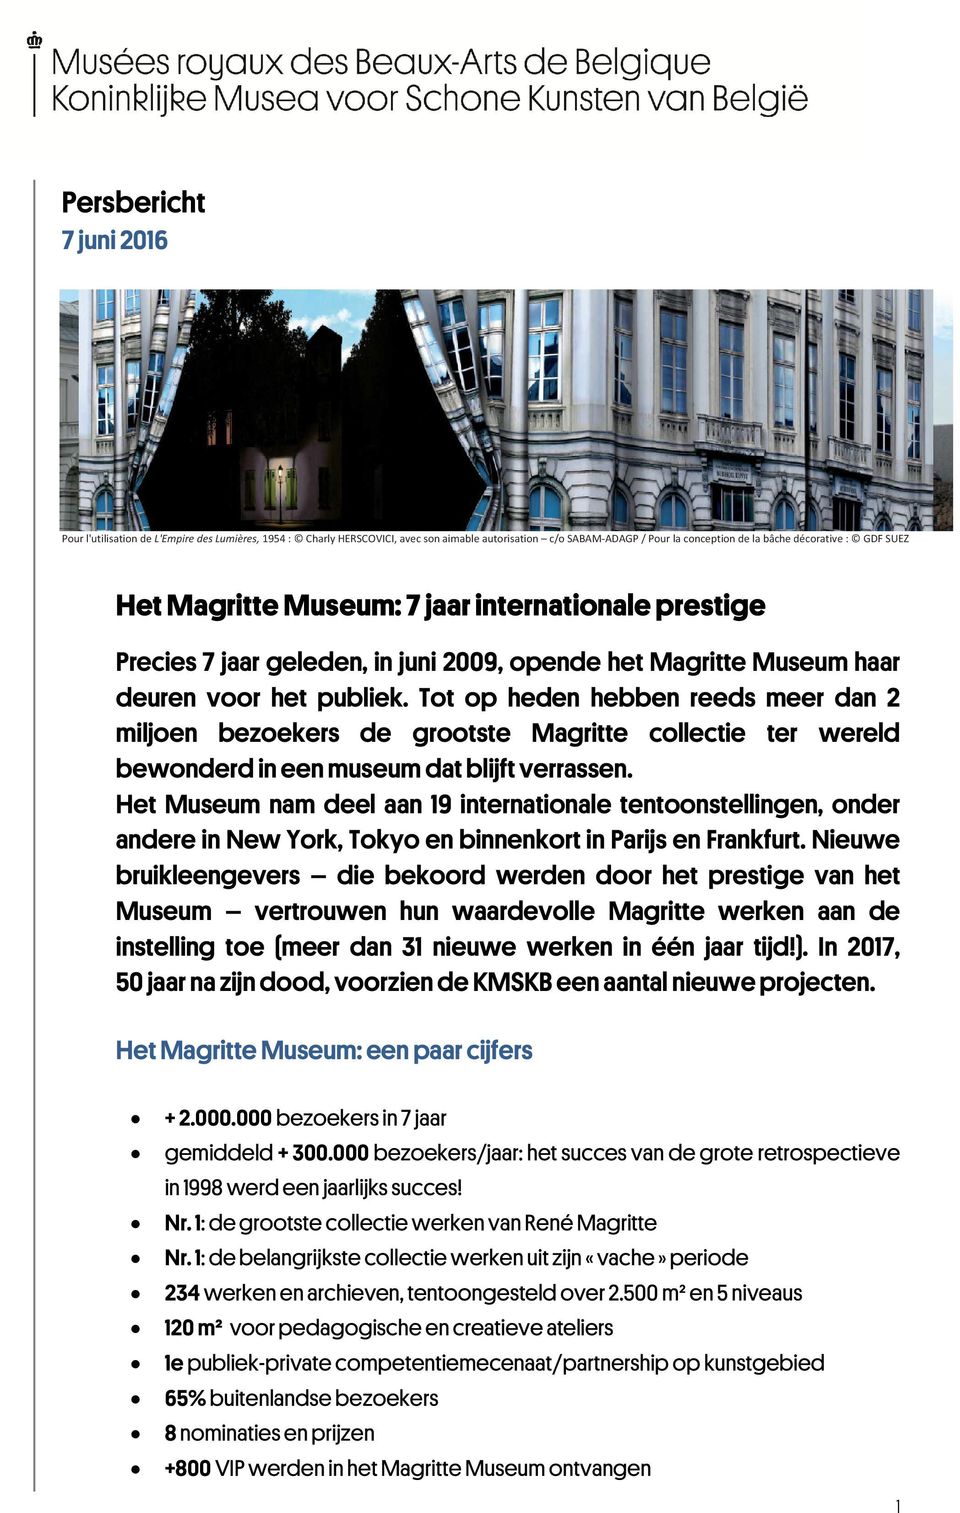 Tot op heden hebben reeds meer dan 2 miljoen bezoekers de grootste Magritte collectie ter wereld bewonderd in een museum dat blijft verrassen.